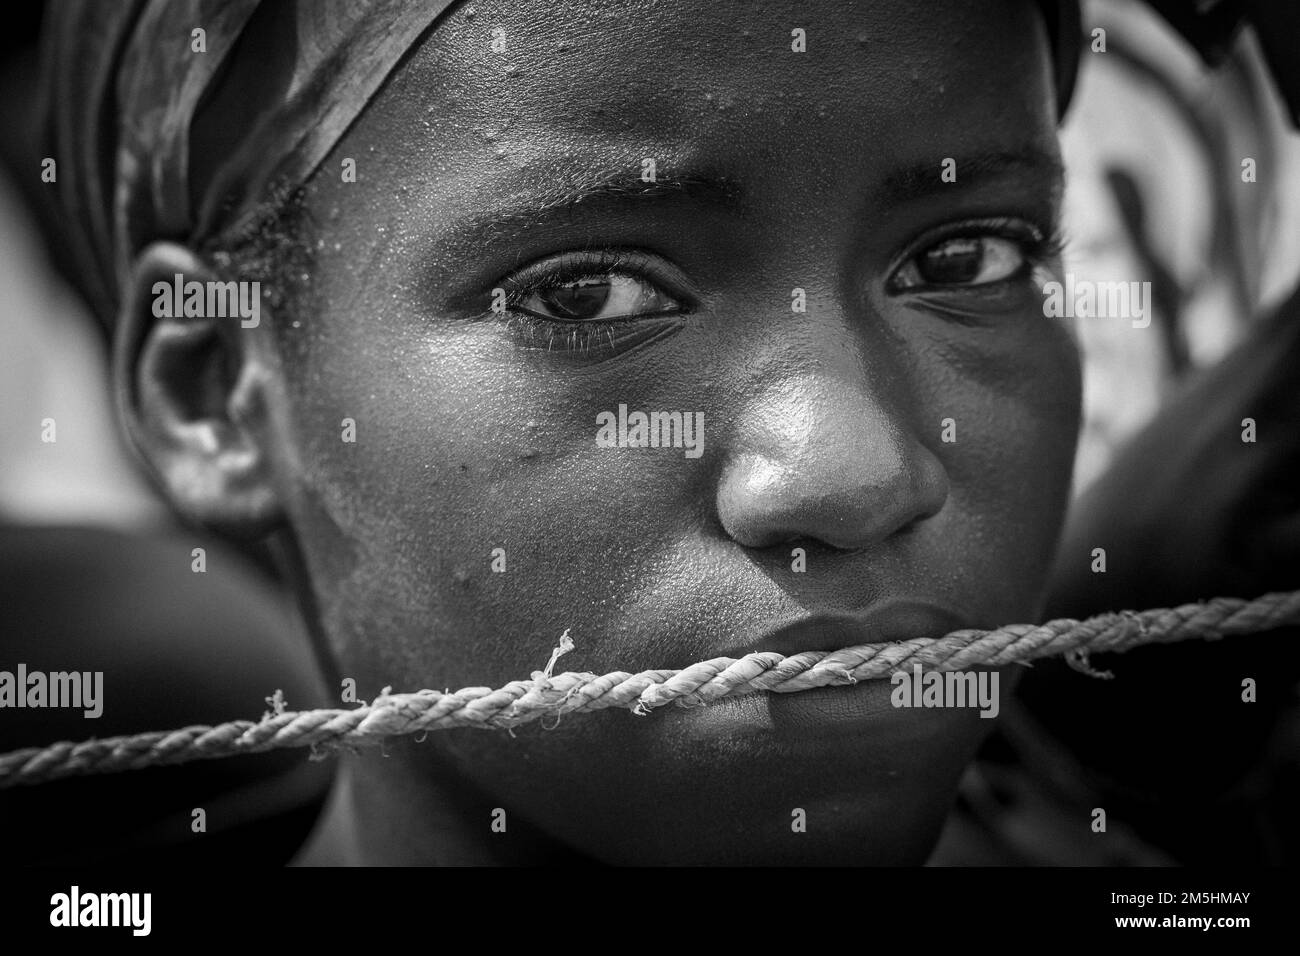 Gros plan portrait d'une jeune fille avec une corde au-dessus de sa bouche étant réduite au silence Banque D'Images